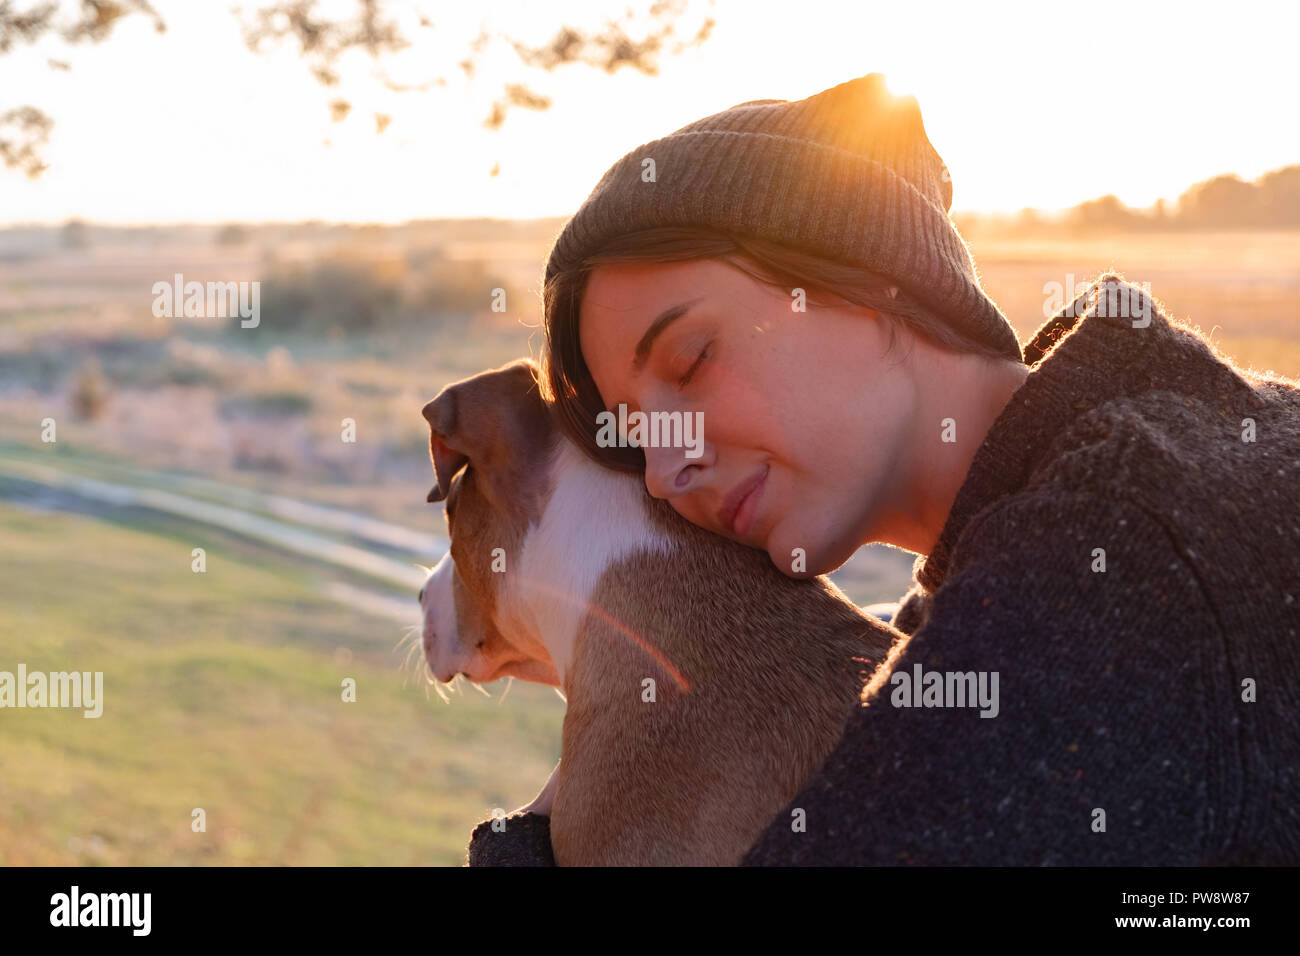 Abbracciando un cane nella bellissima natura al tramonto. La donna rivolta verso il sole di sera si siede con il suo animale domestico accanto a lei Foto Stock